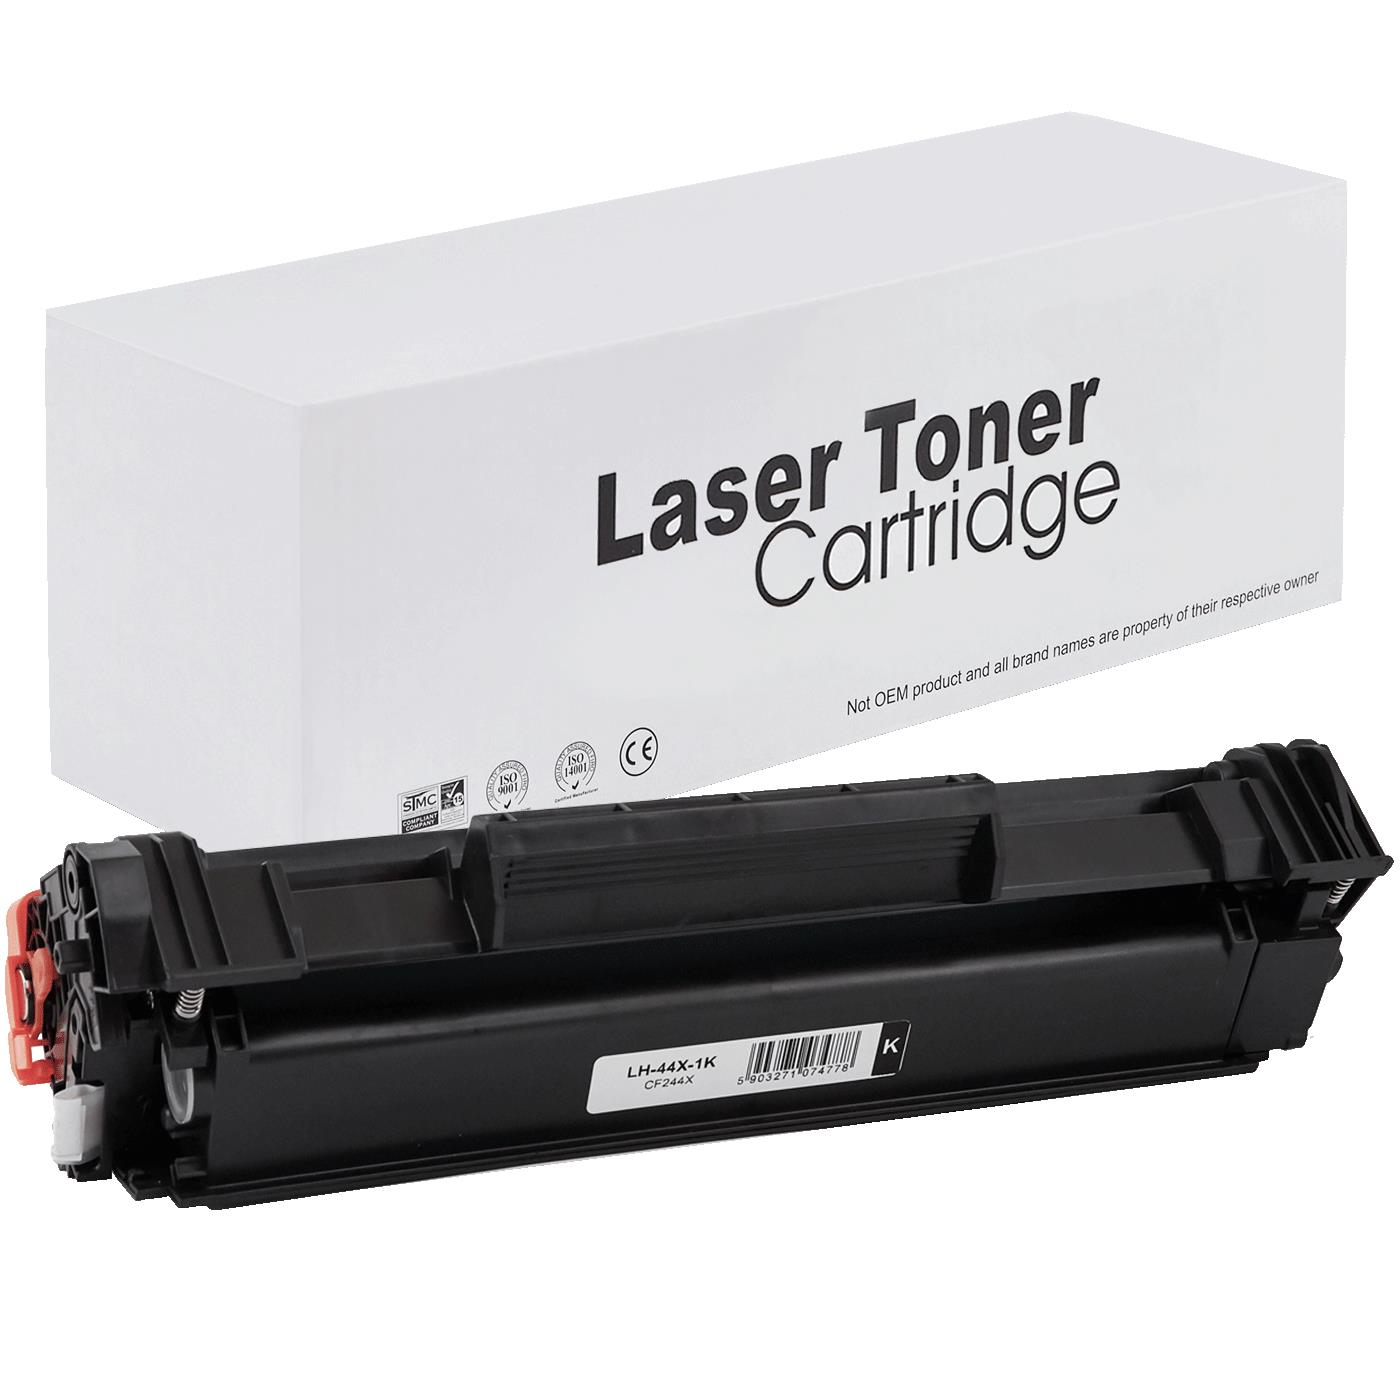 съвместима тонер касета за принтери и печатащи устройства на Hewlett Packard (HP) LaserJet Pro MFP M28w Toner HP-44X | CF244X. Ниски цени, прецизно изпълнение, високо качество.